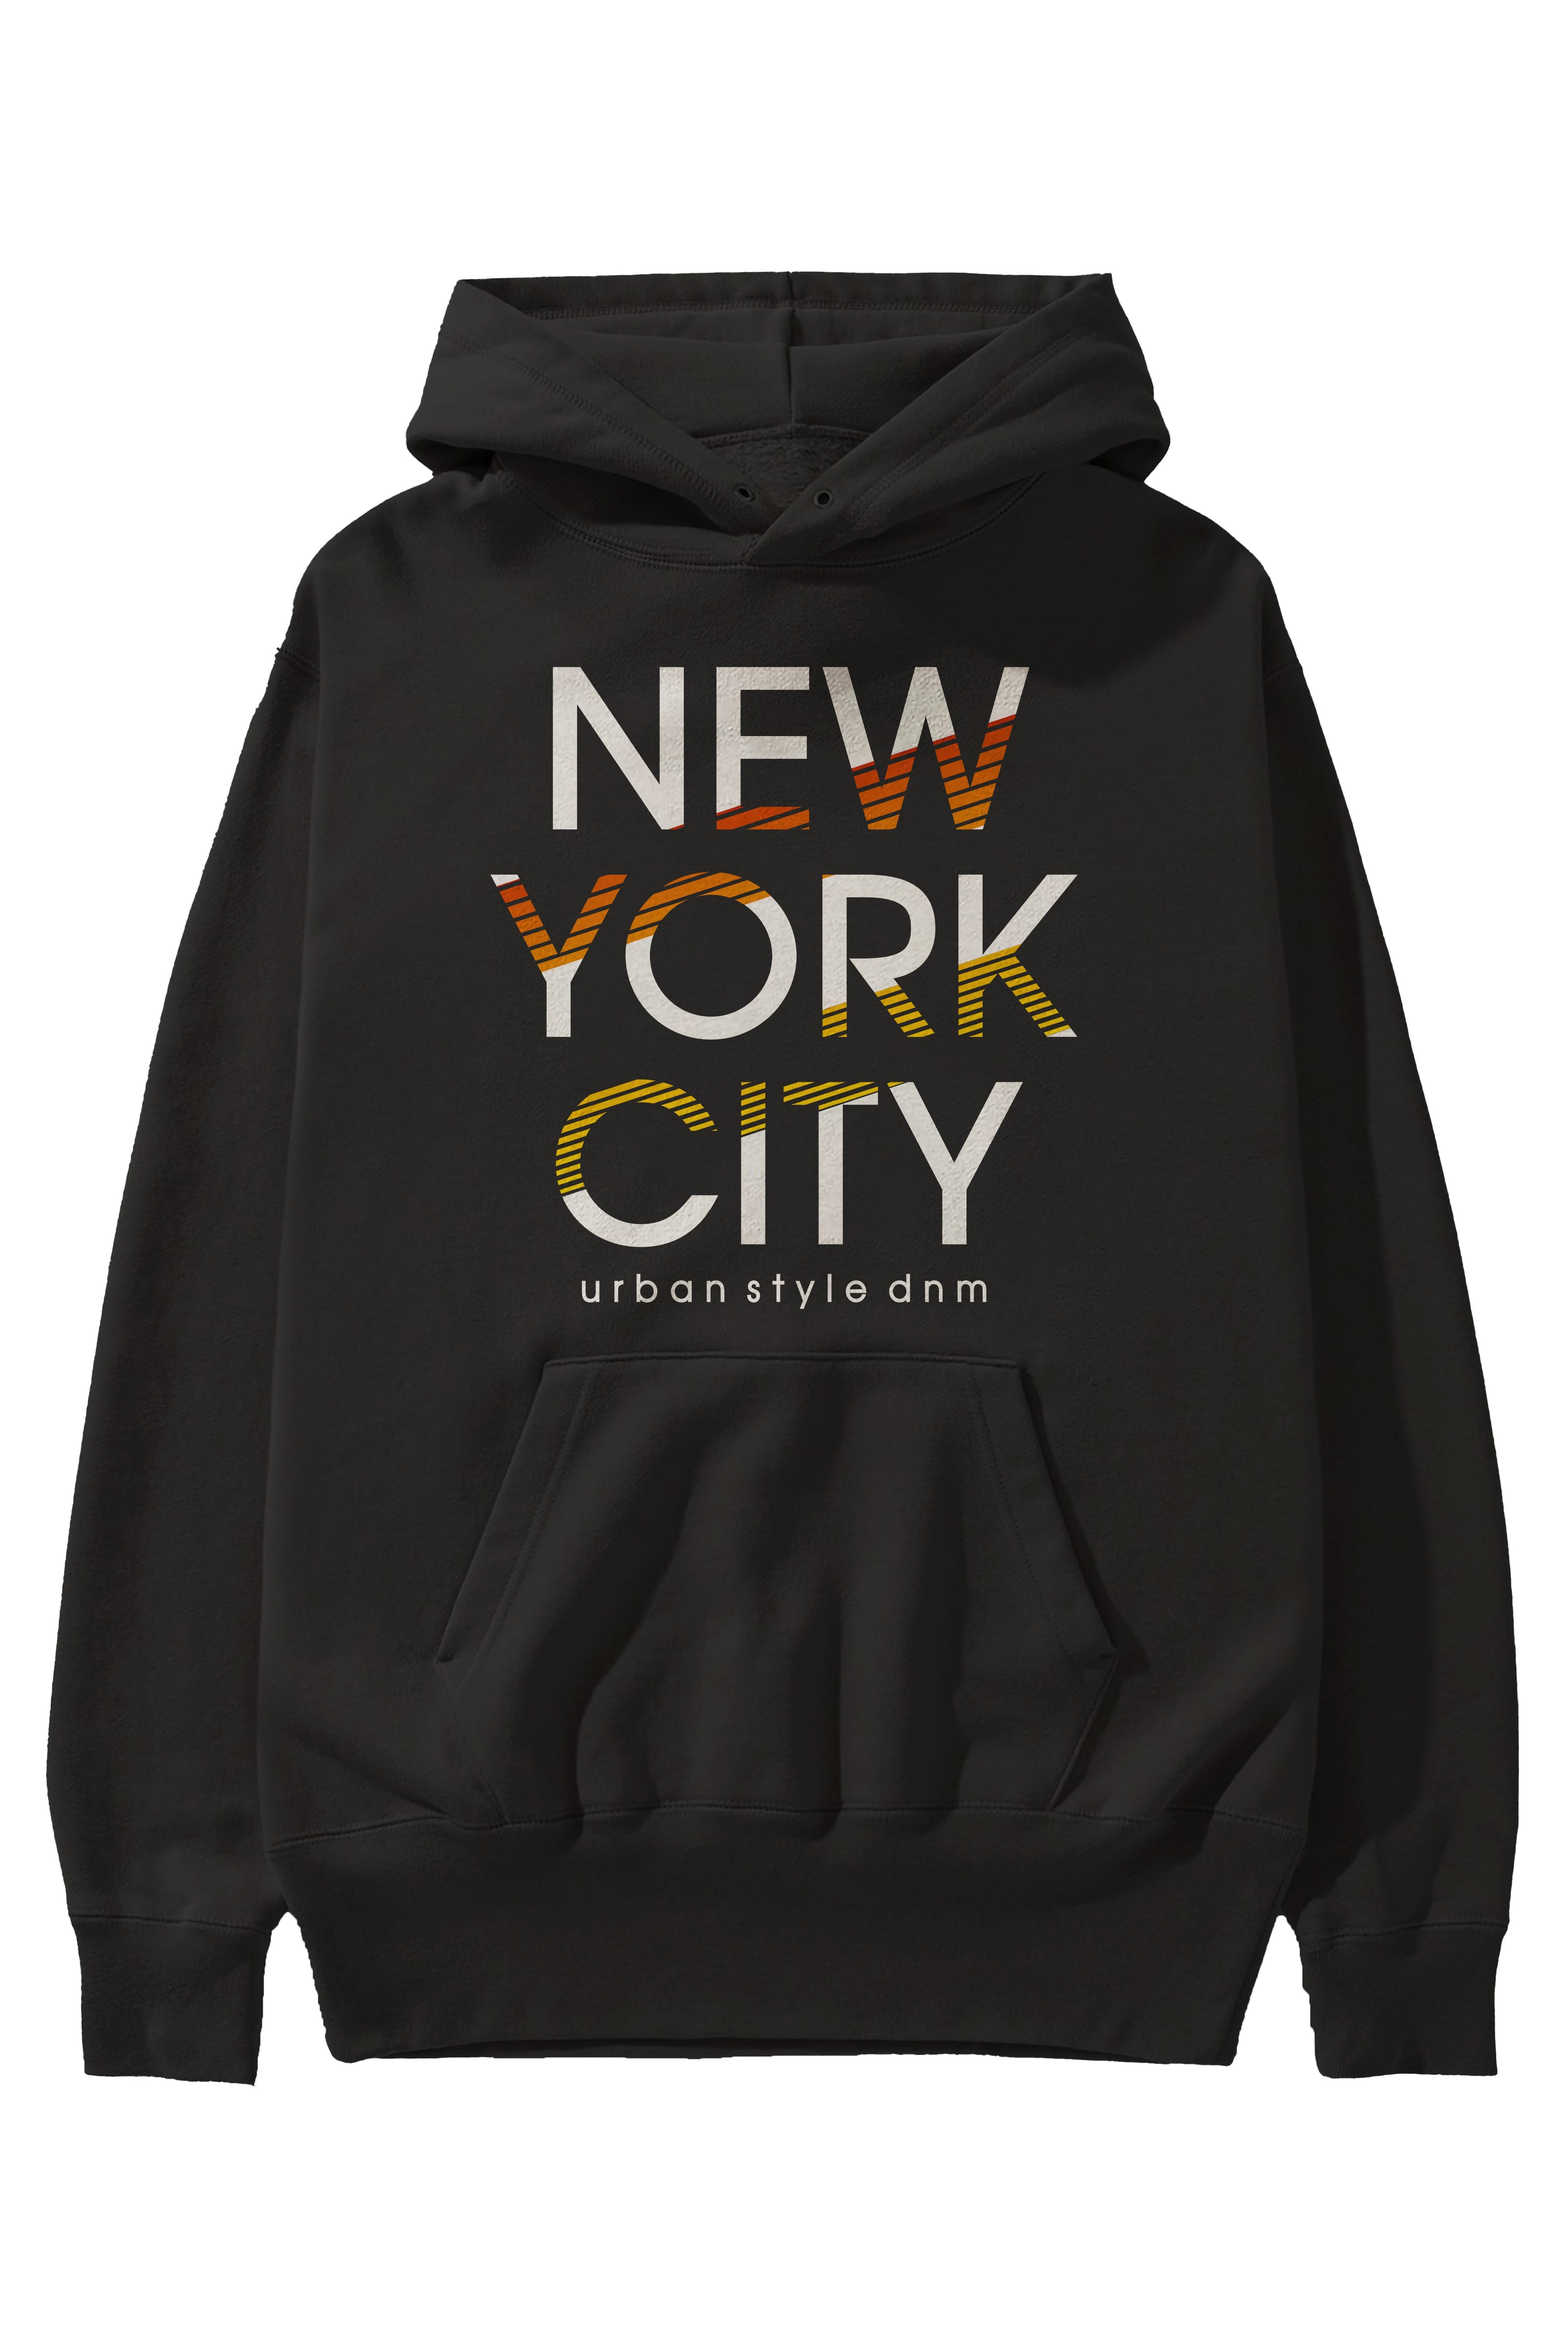 New York City Style Ön Baskılı Oversize Hoodie Kapüşonlu Sweatshirt Erkek Kadın Unisex